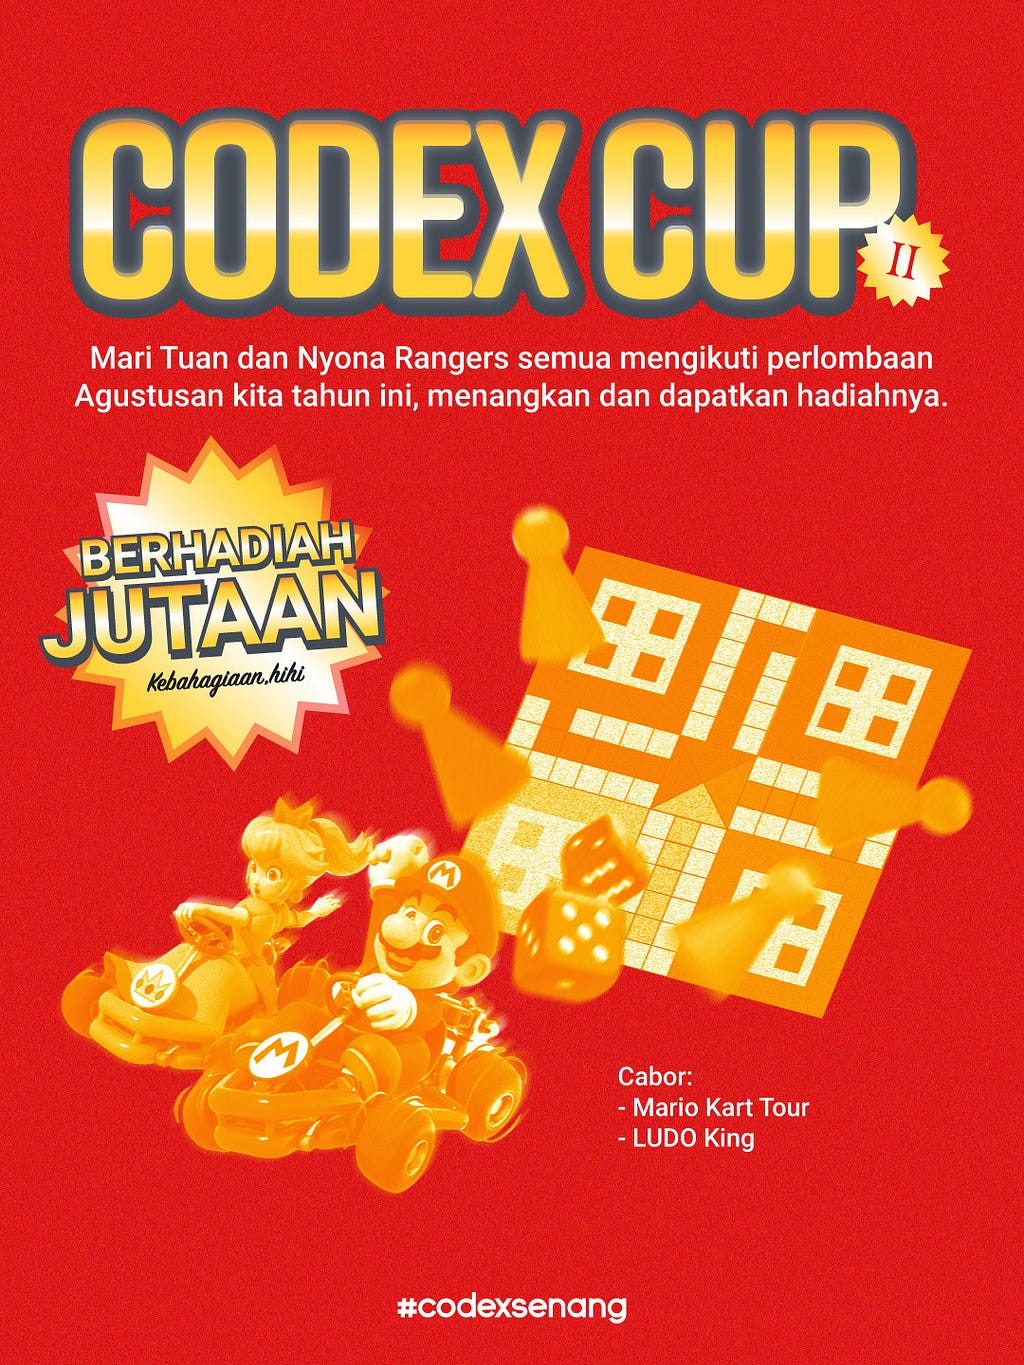 CODEX CUP II